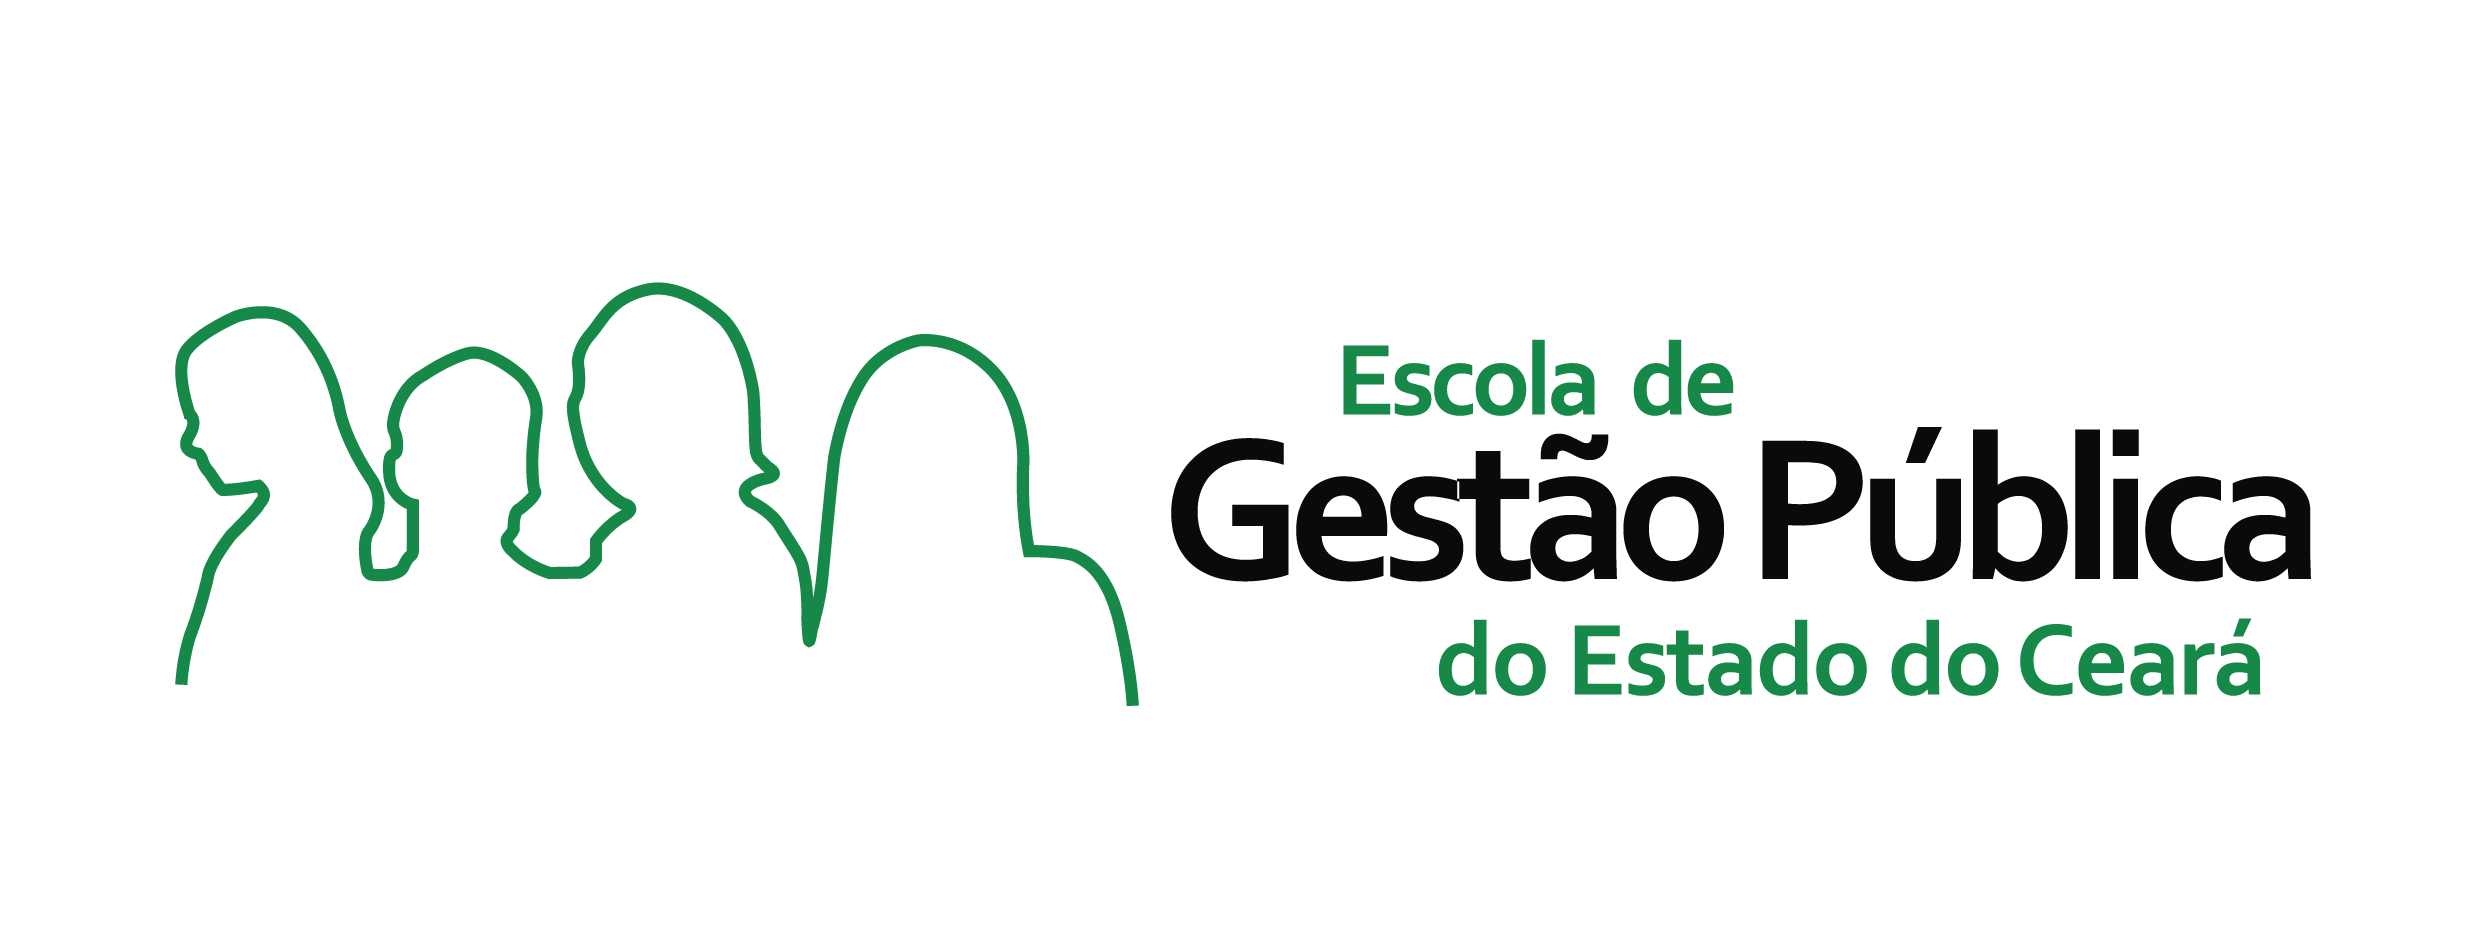 Escola de Gestão Pública do Estado do Ceará